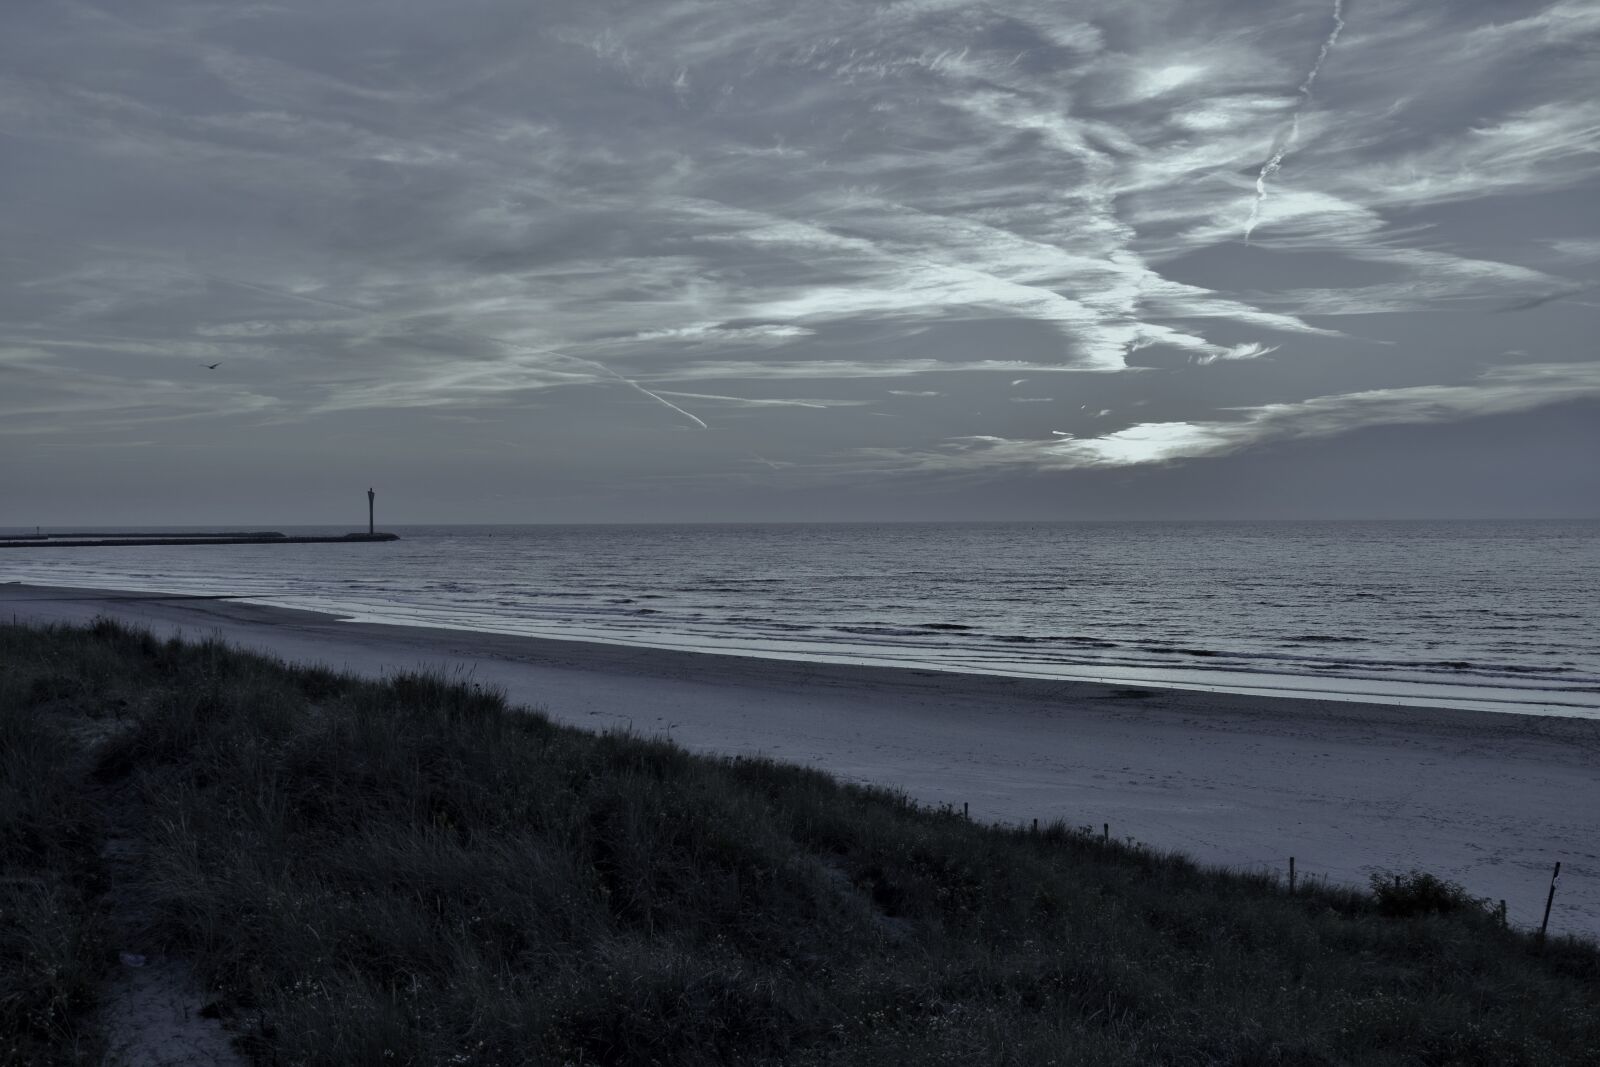 Nikon AF-S DX Nikkor 18-105mm F3.5-5.6G ED VR sample photo. Beach, landscape, clouds, grey photography